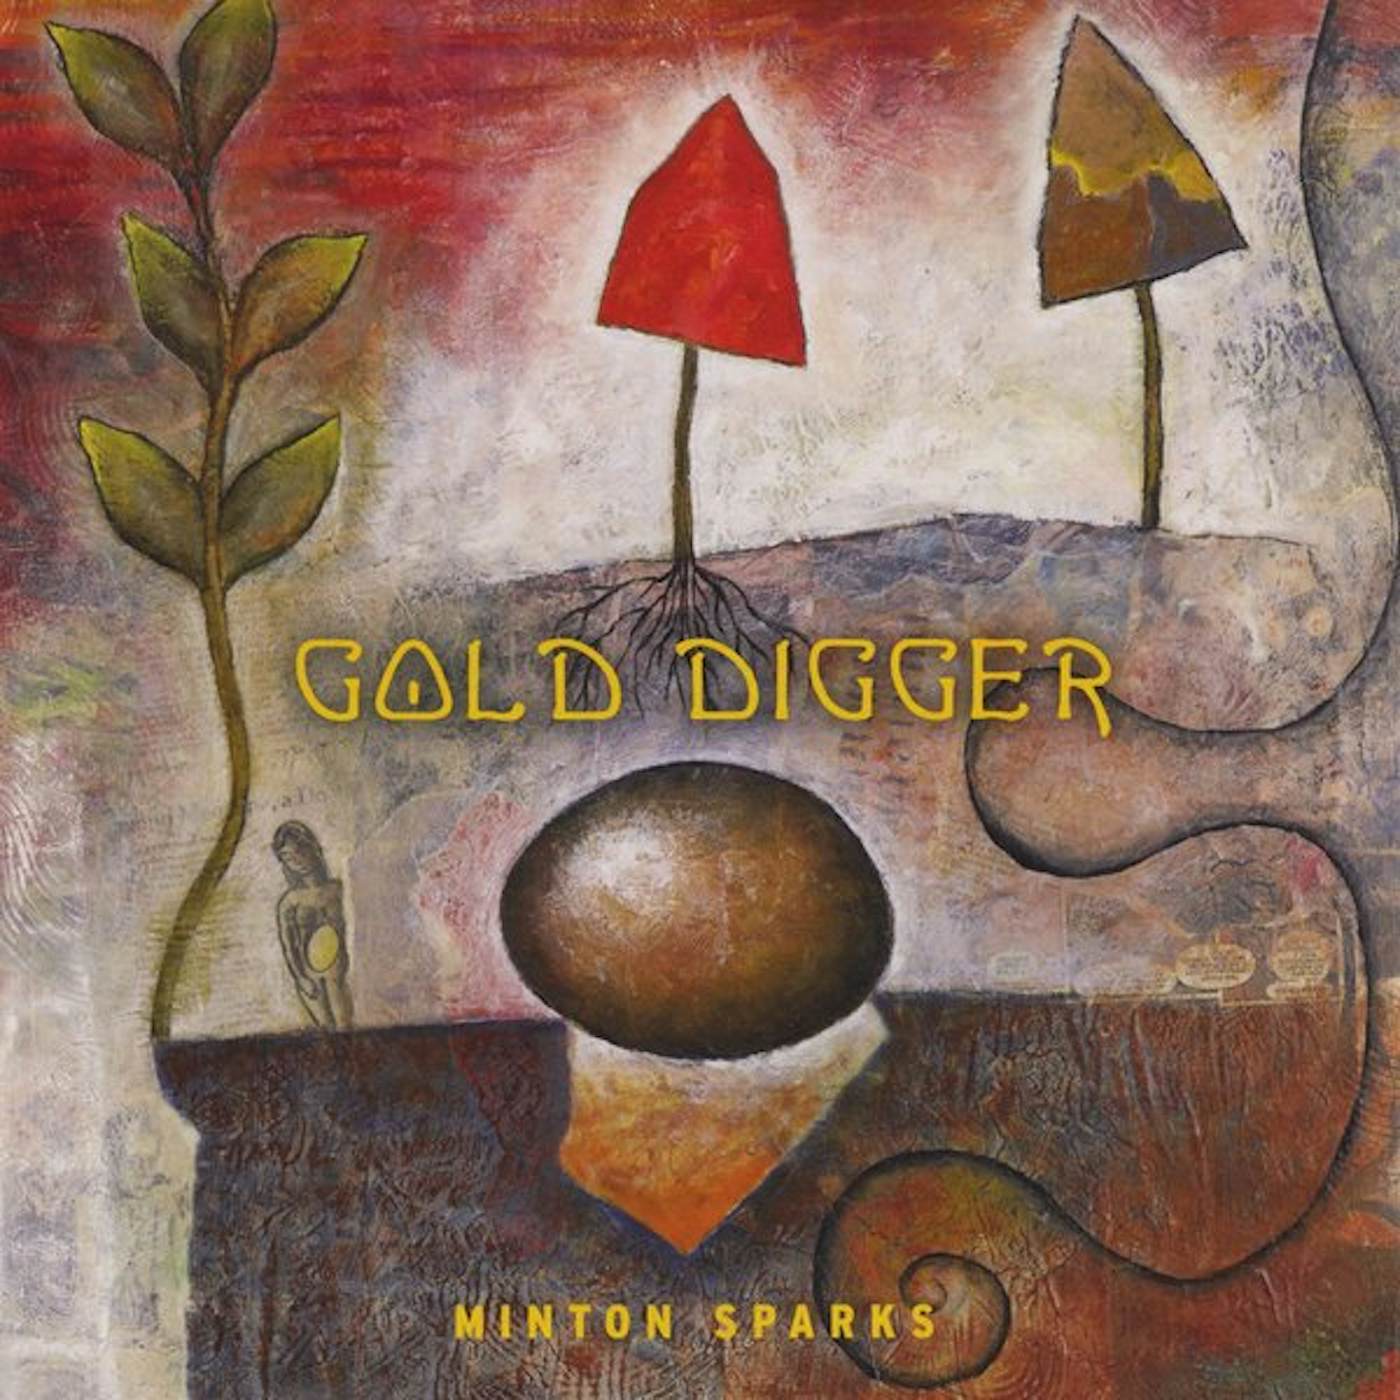 Minton Sparks GOLD DIGGER CD